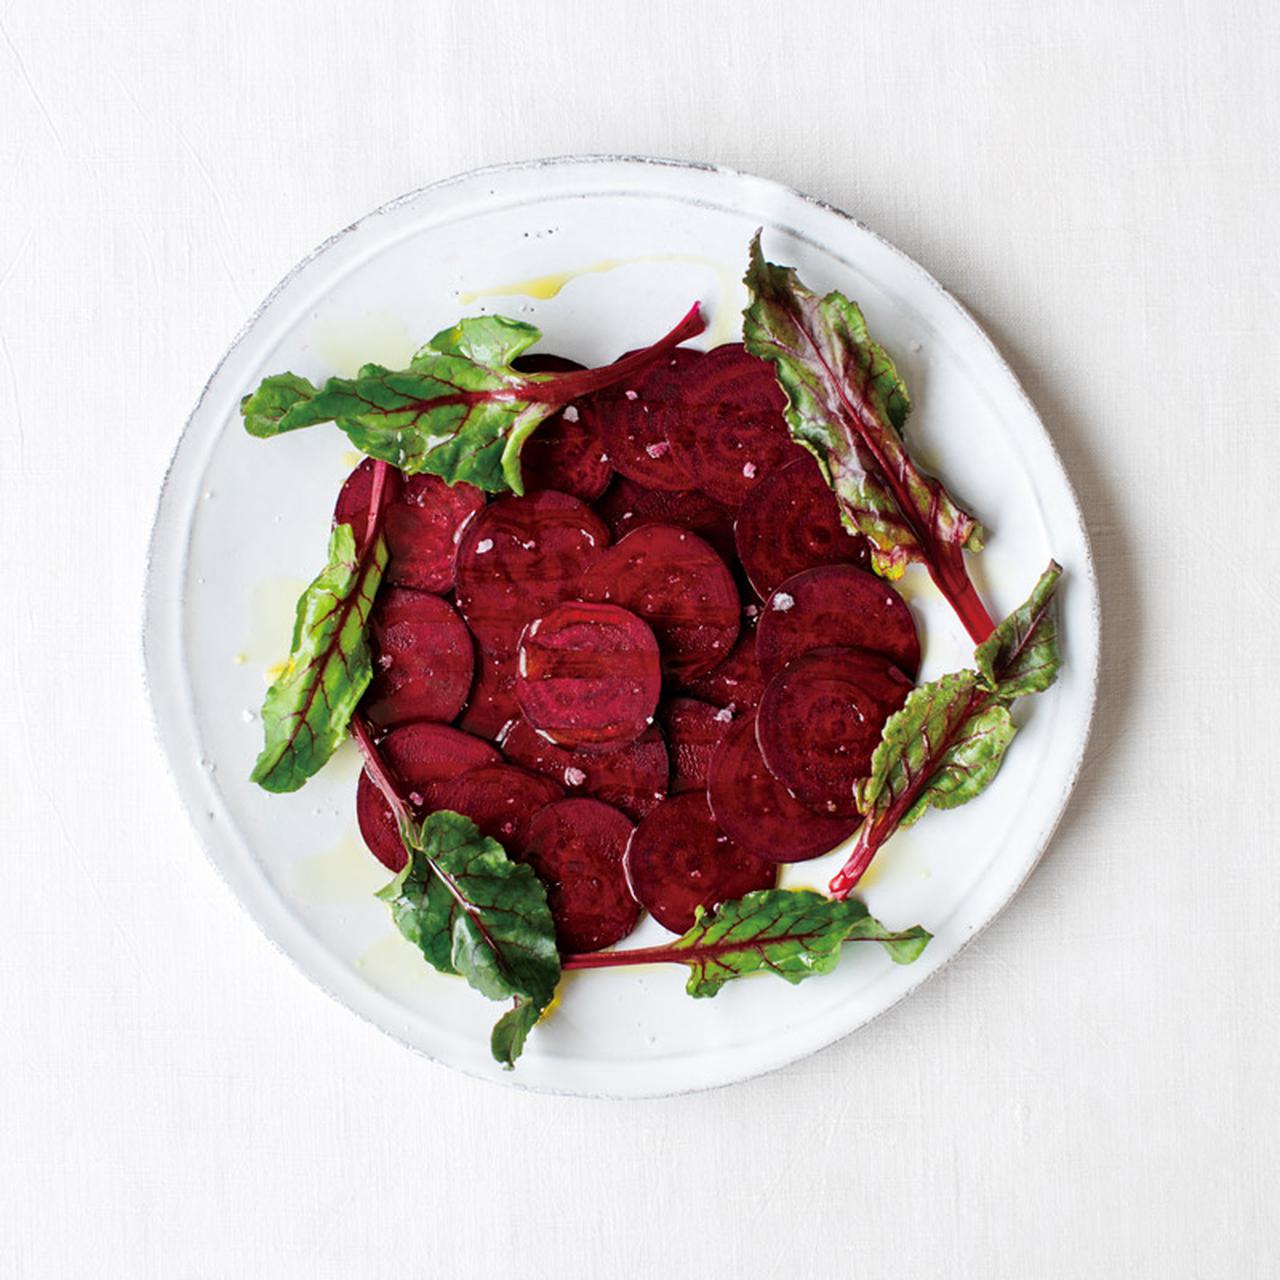 「食べる輸血」と呼ばれるビーツ。料理研究家が紹介するビーツの魅力と調理法について。